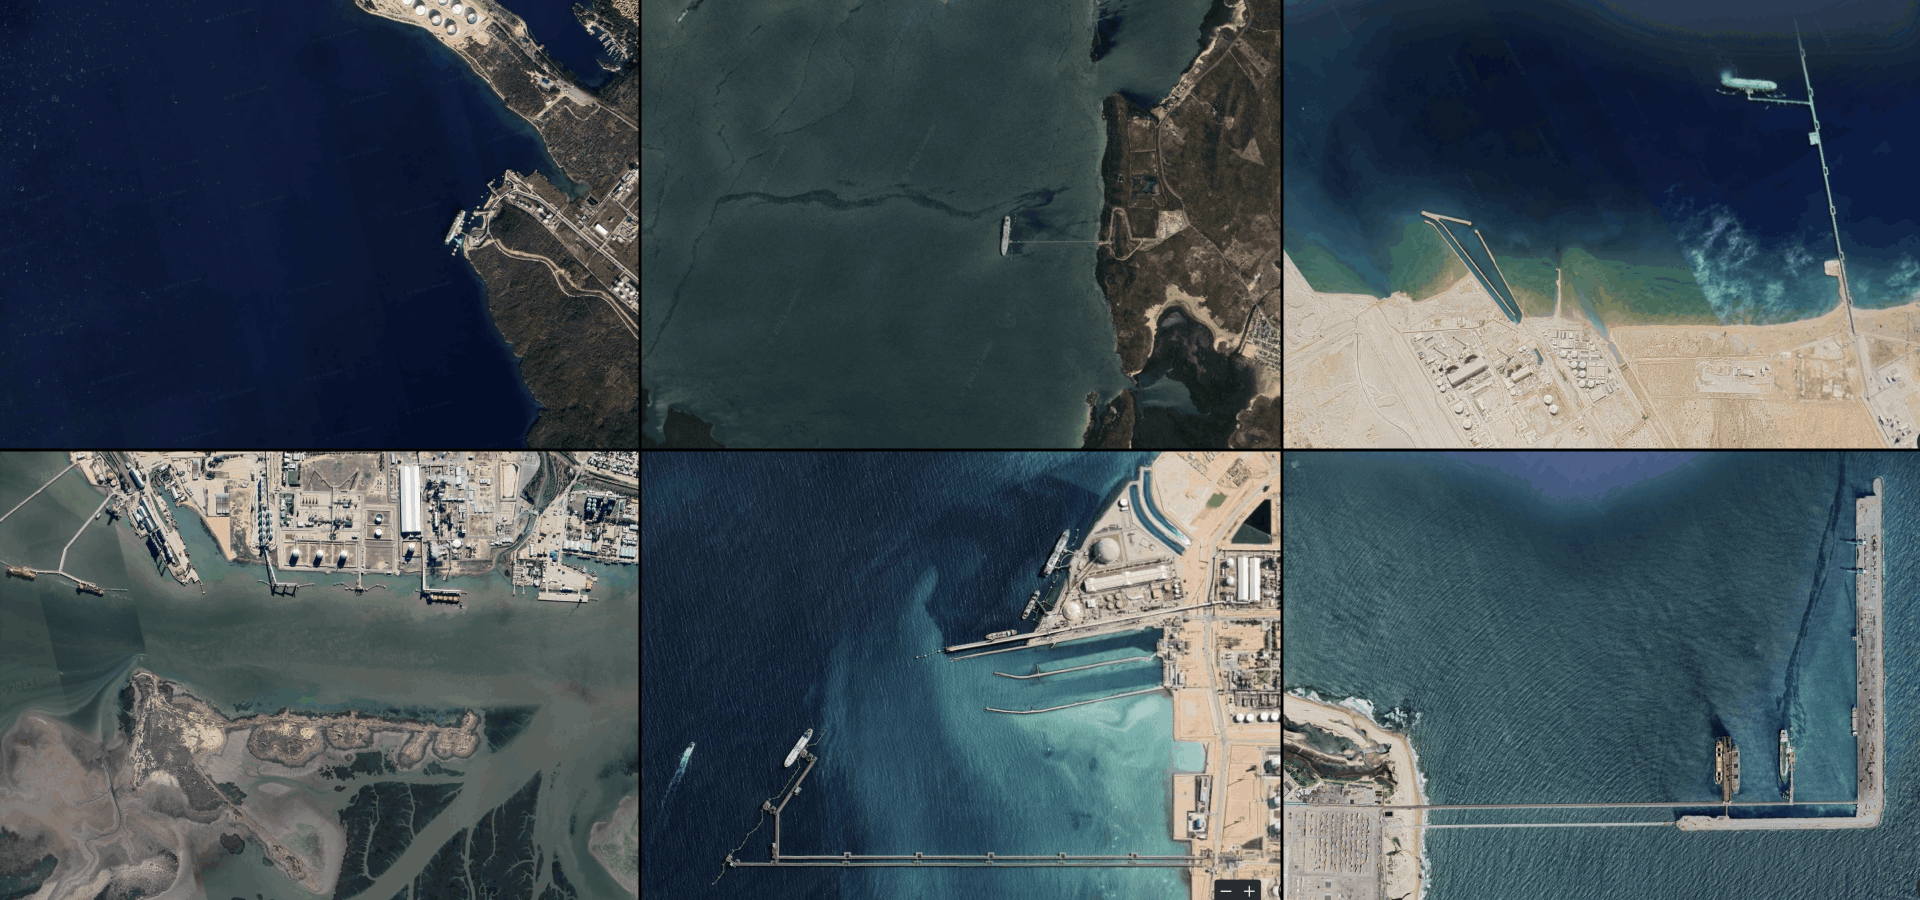 Vue satellite de six navires méthaniers flottants amarrés à des quais situés en mer libre / Images : Google Earth